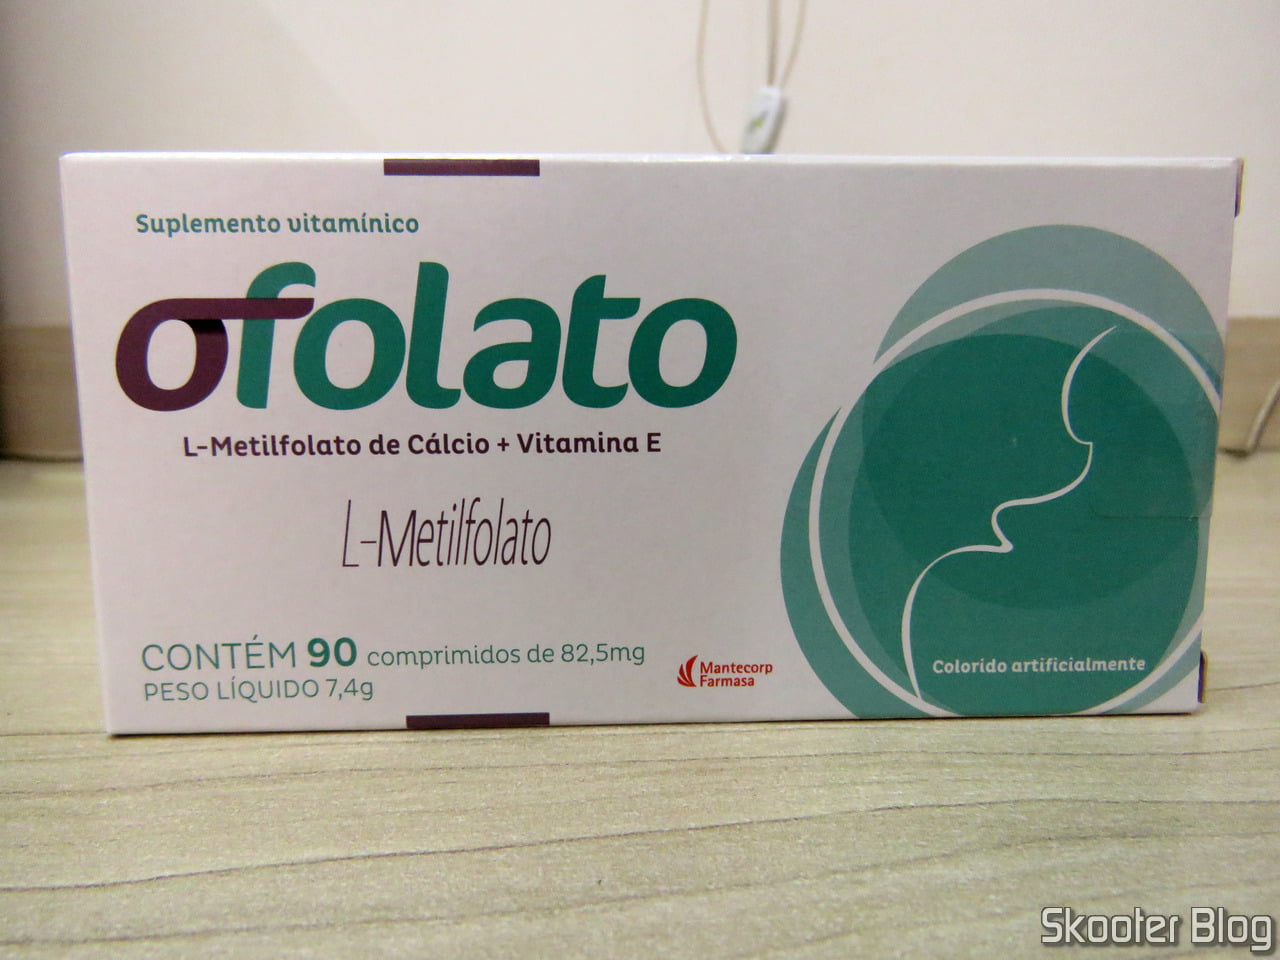 Unboxing] Ofolato c/90 Comprimidos - Ácido Fólico + Vitamina E -  Farmadelivery - Skooter Blog